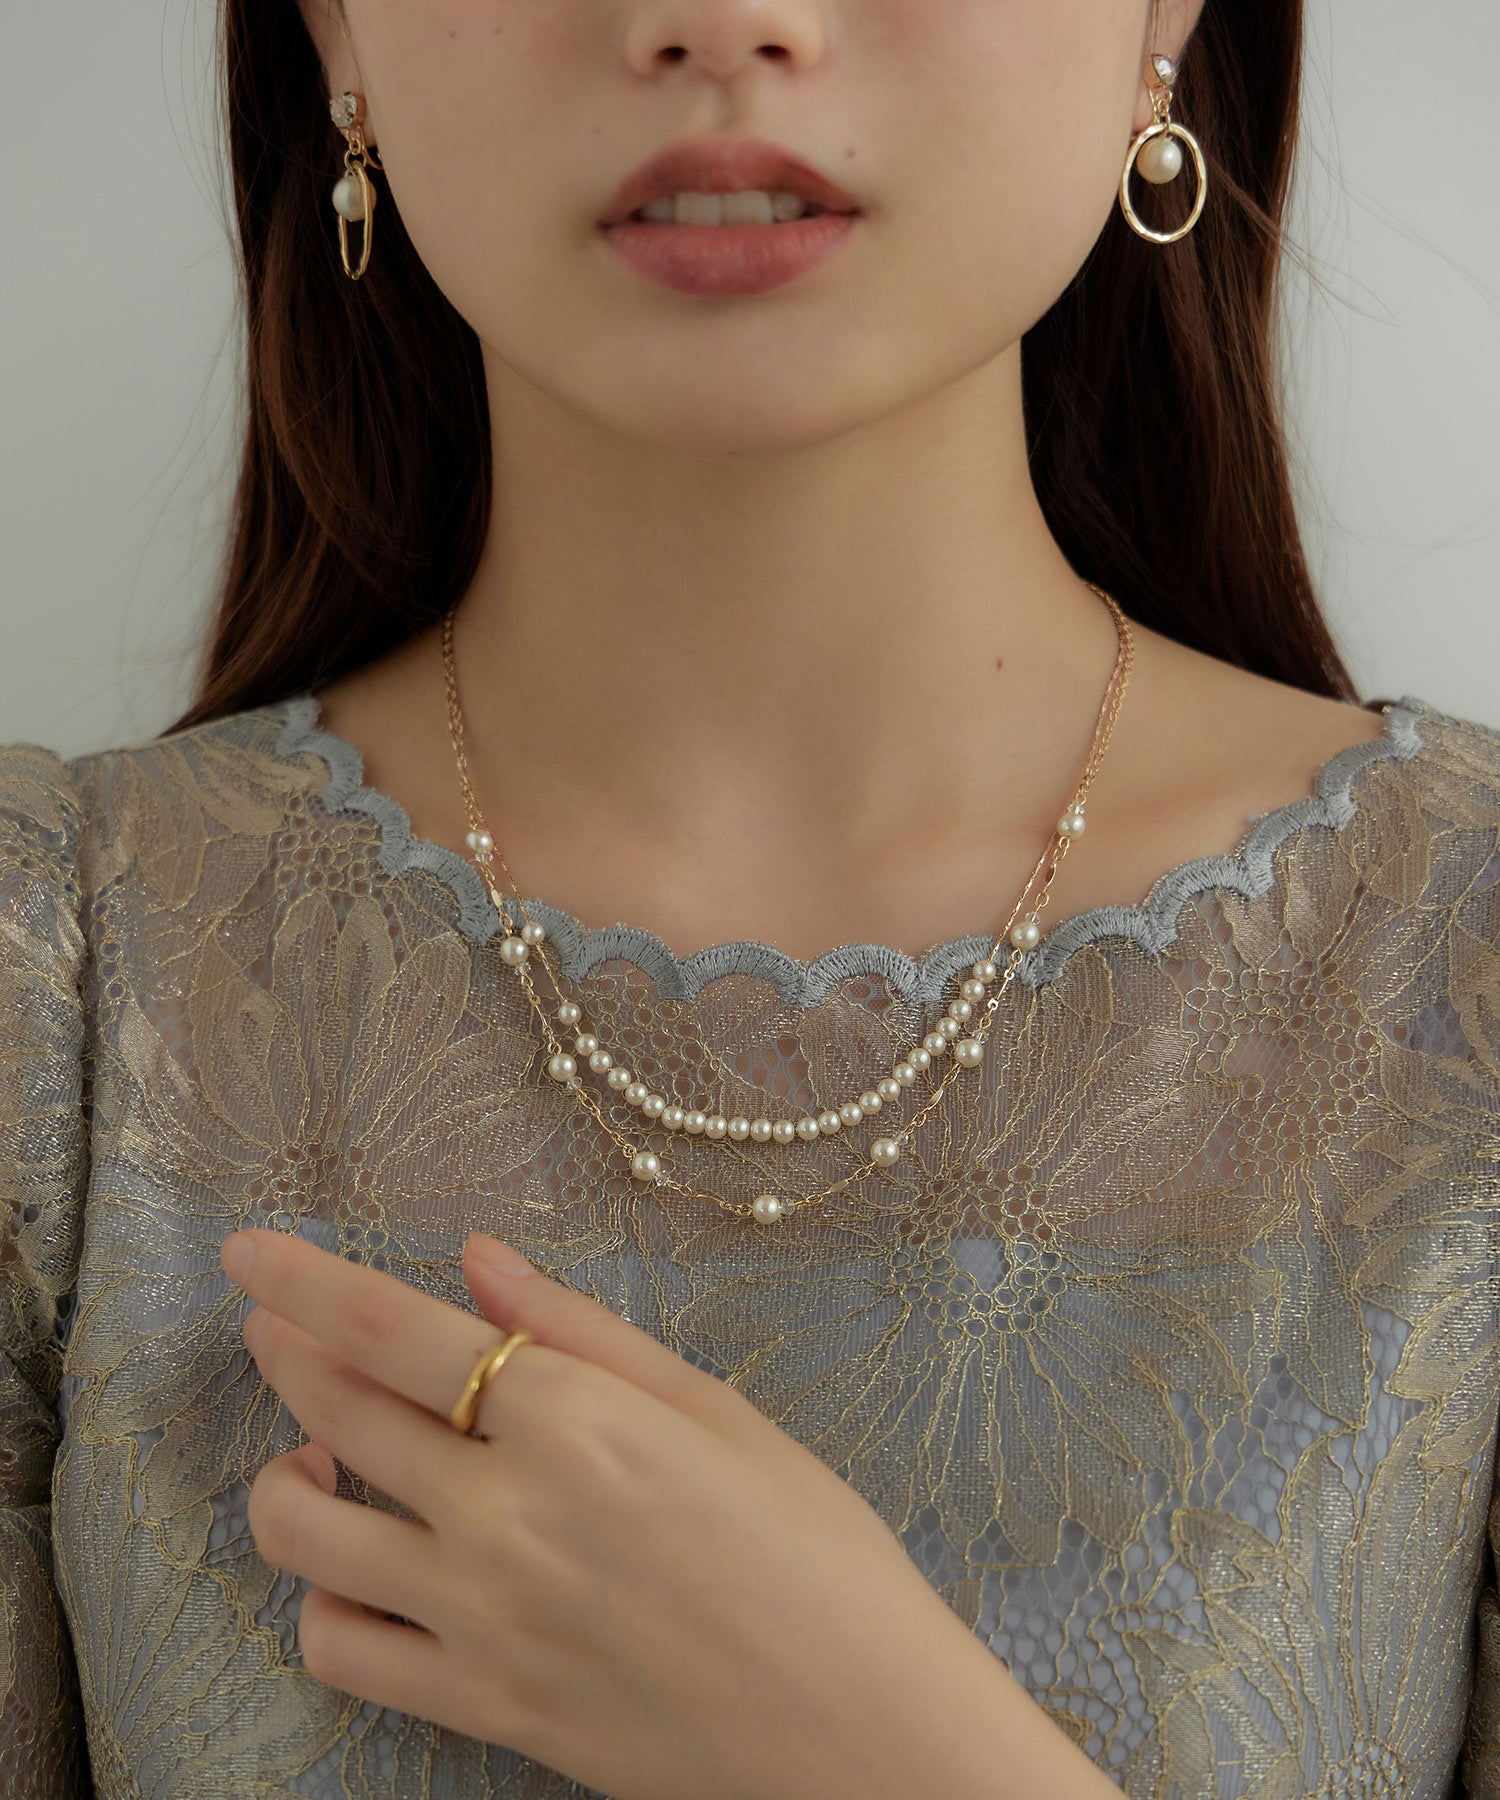 二連の真珠のネックレス